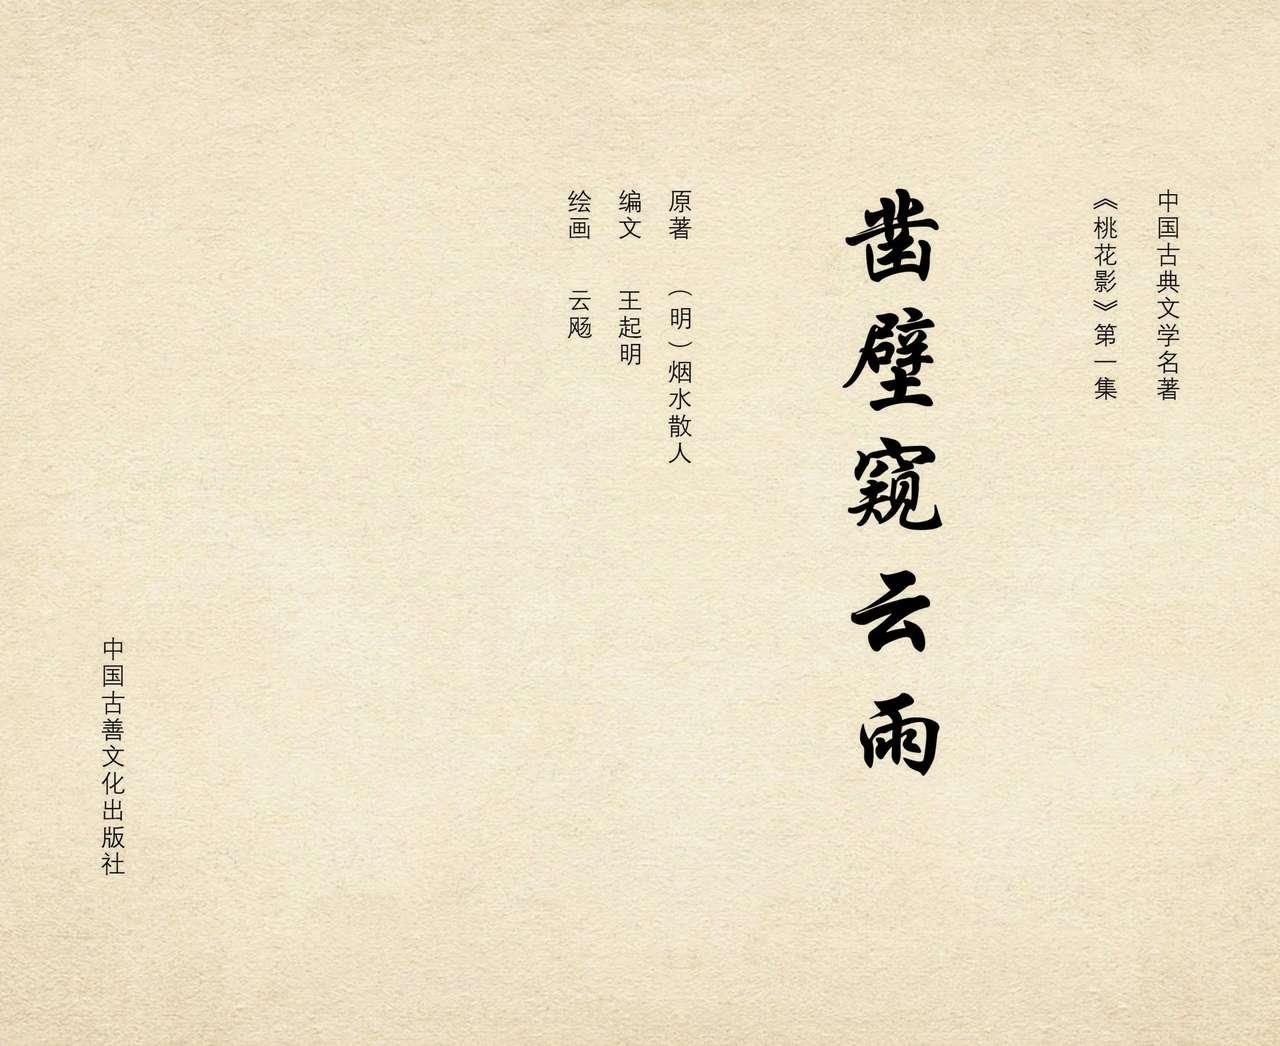 桃花影 卷一 ~ 二 云飏绘 中国古善文化出版社 2